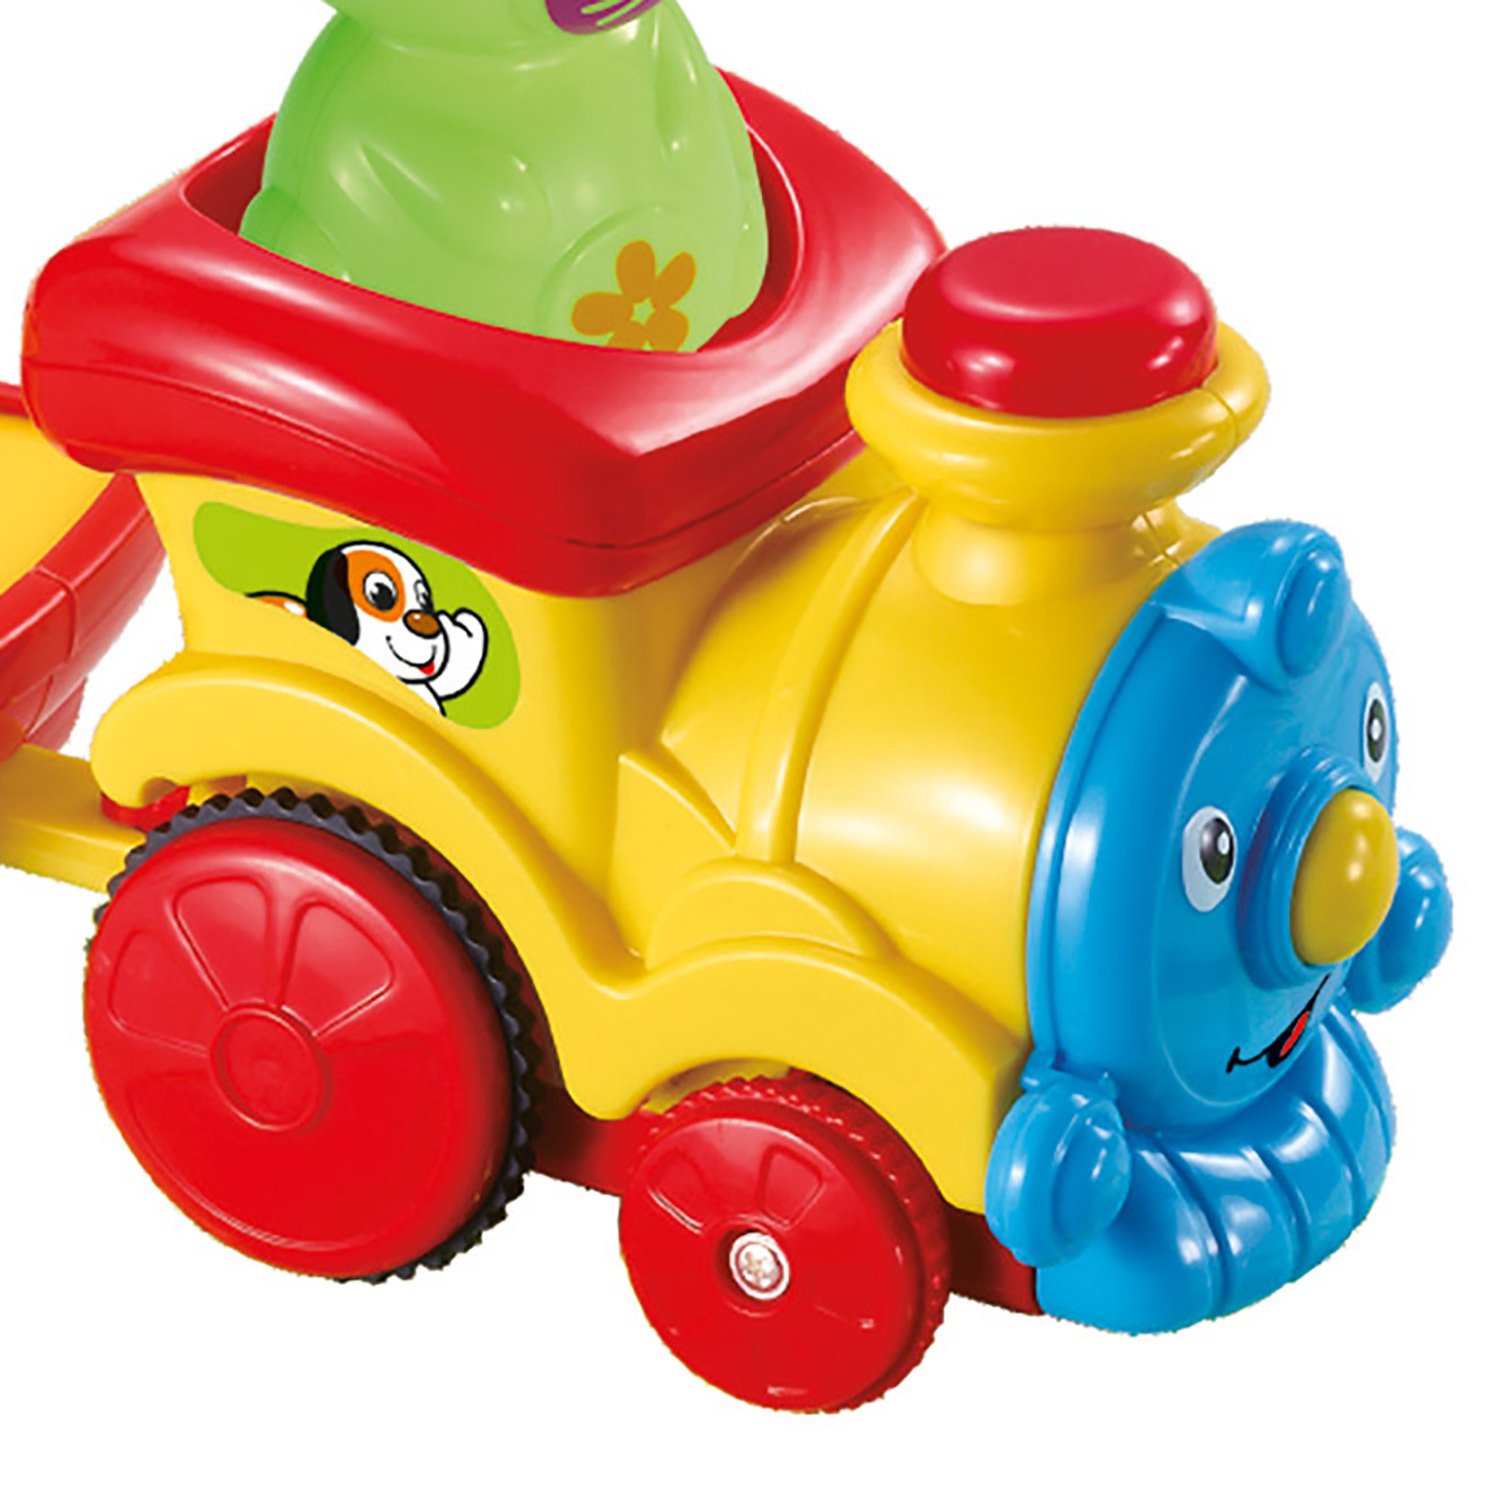 Игрушка ToysLab (Bebelino) Музыкальный поезд с животными